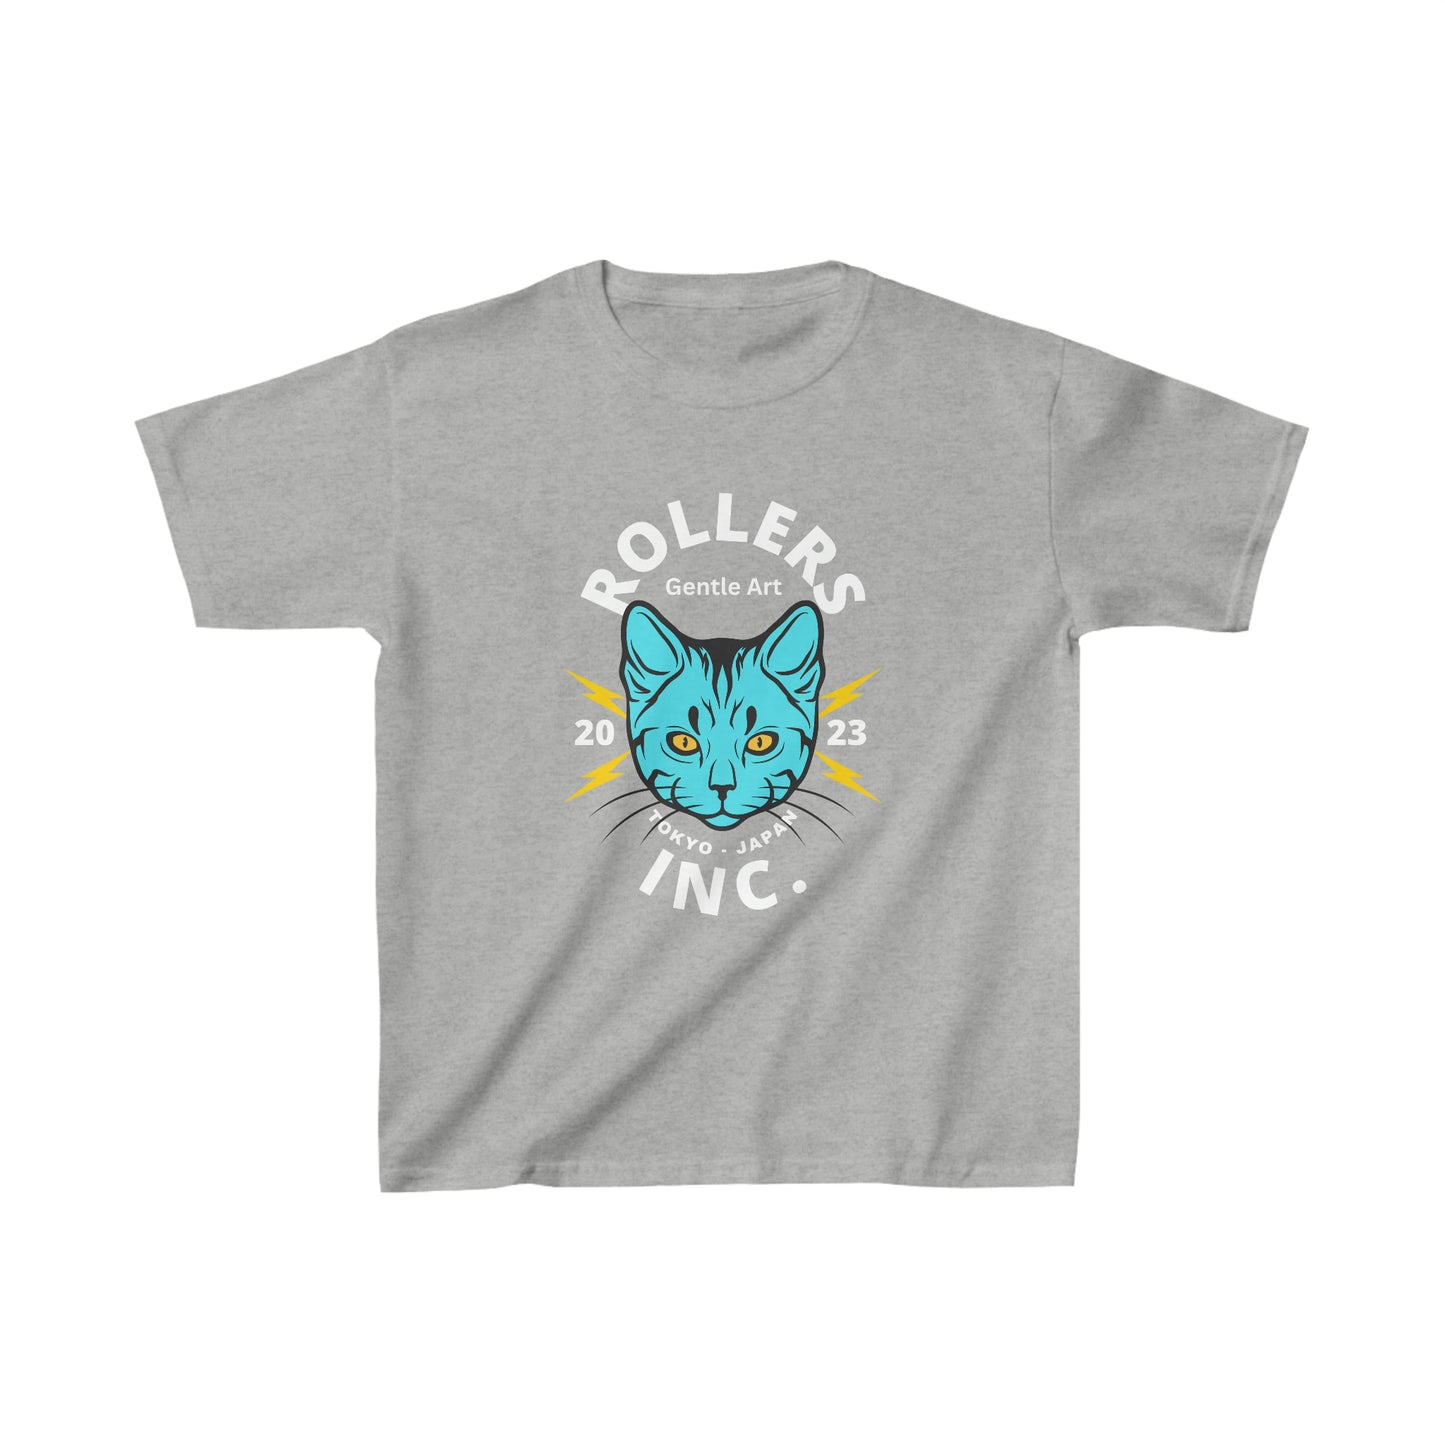 Rollers Inc Japan Cat Youth Jiu Jitsu T-Shirt and Jiu Jitsu Apparel